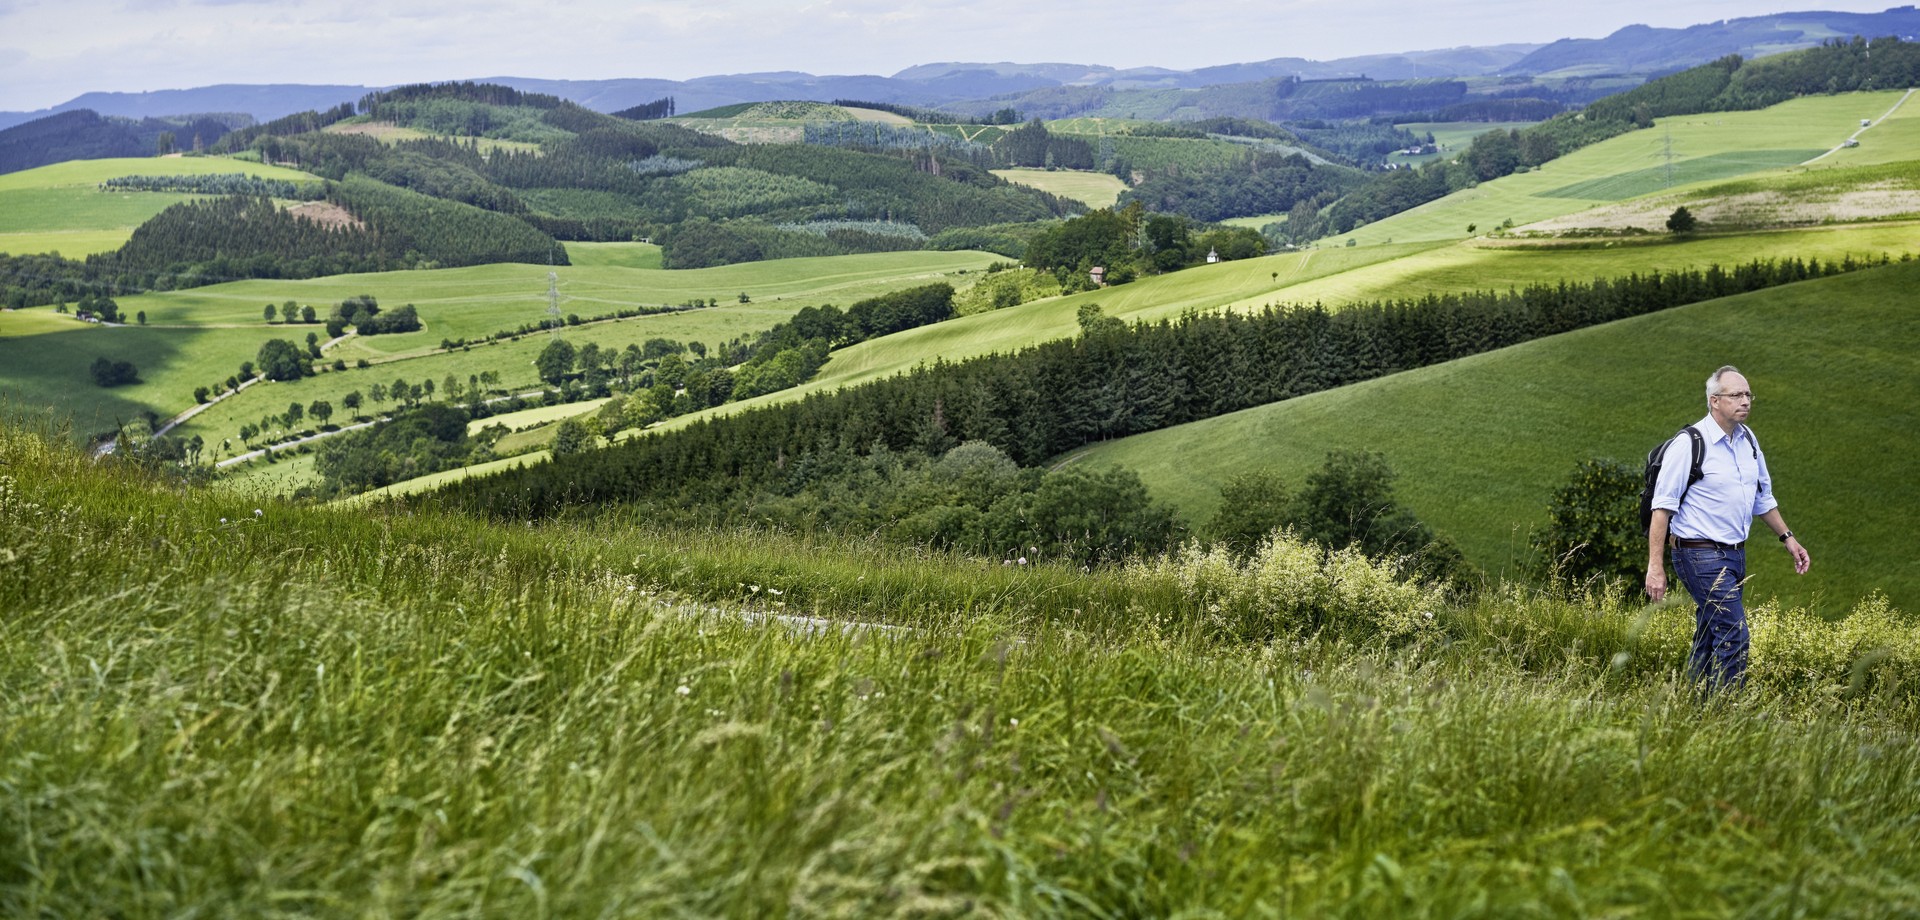 Panoramablick über ein Tal und die Hügelige Landschaft mit dem LWL-Direktor im Vordergrund.